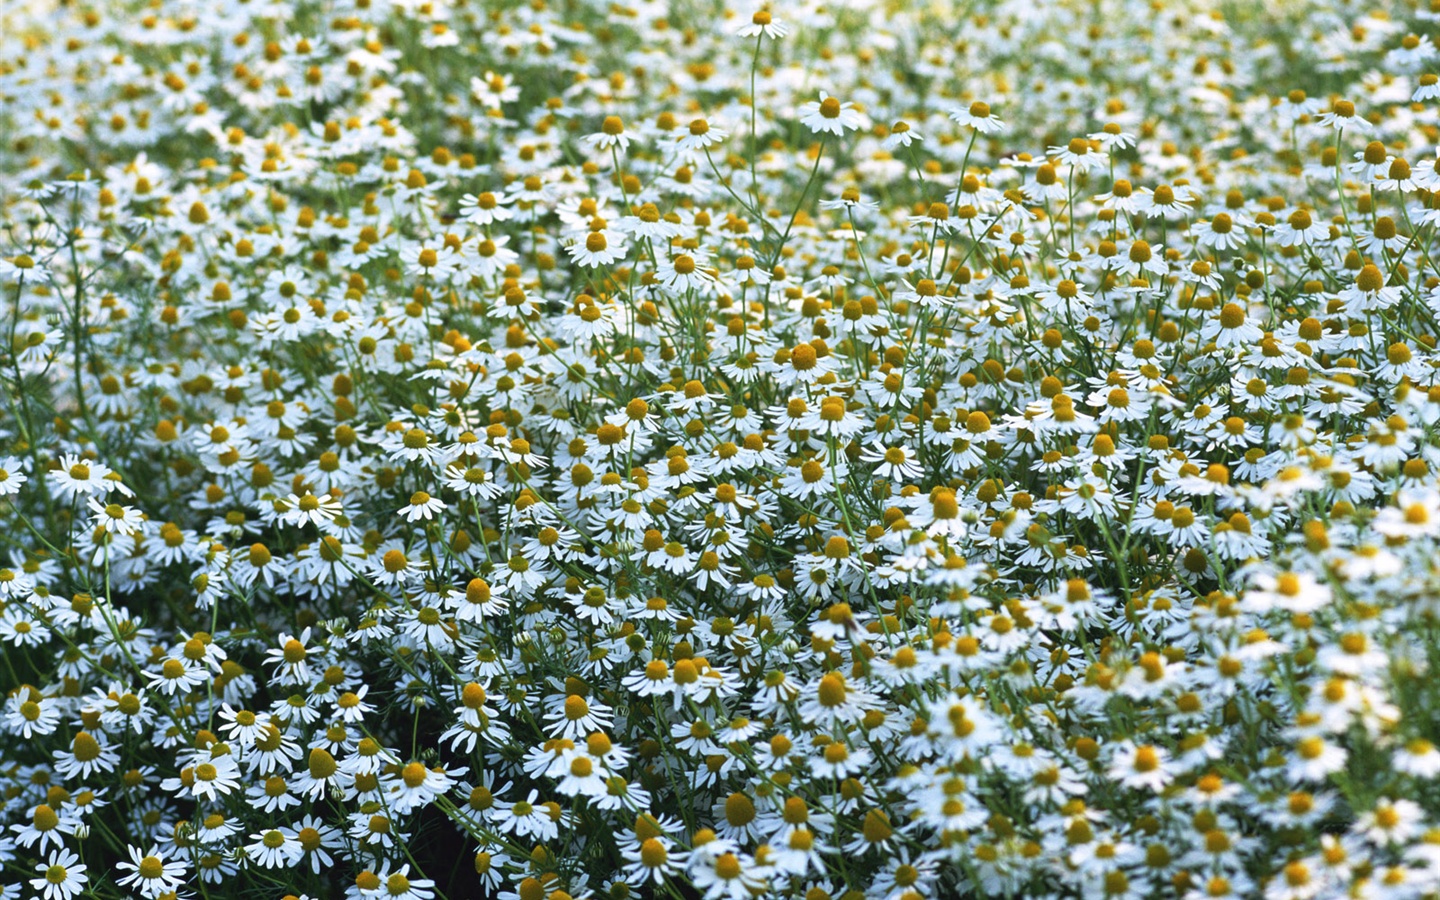 눈같이 흰 꽃 벽지 #10 - 1440x900